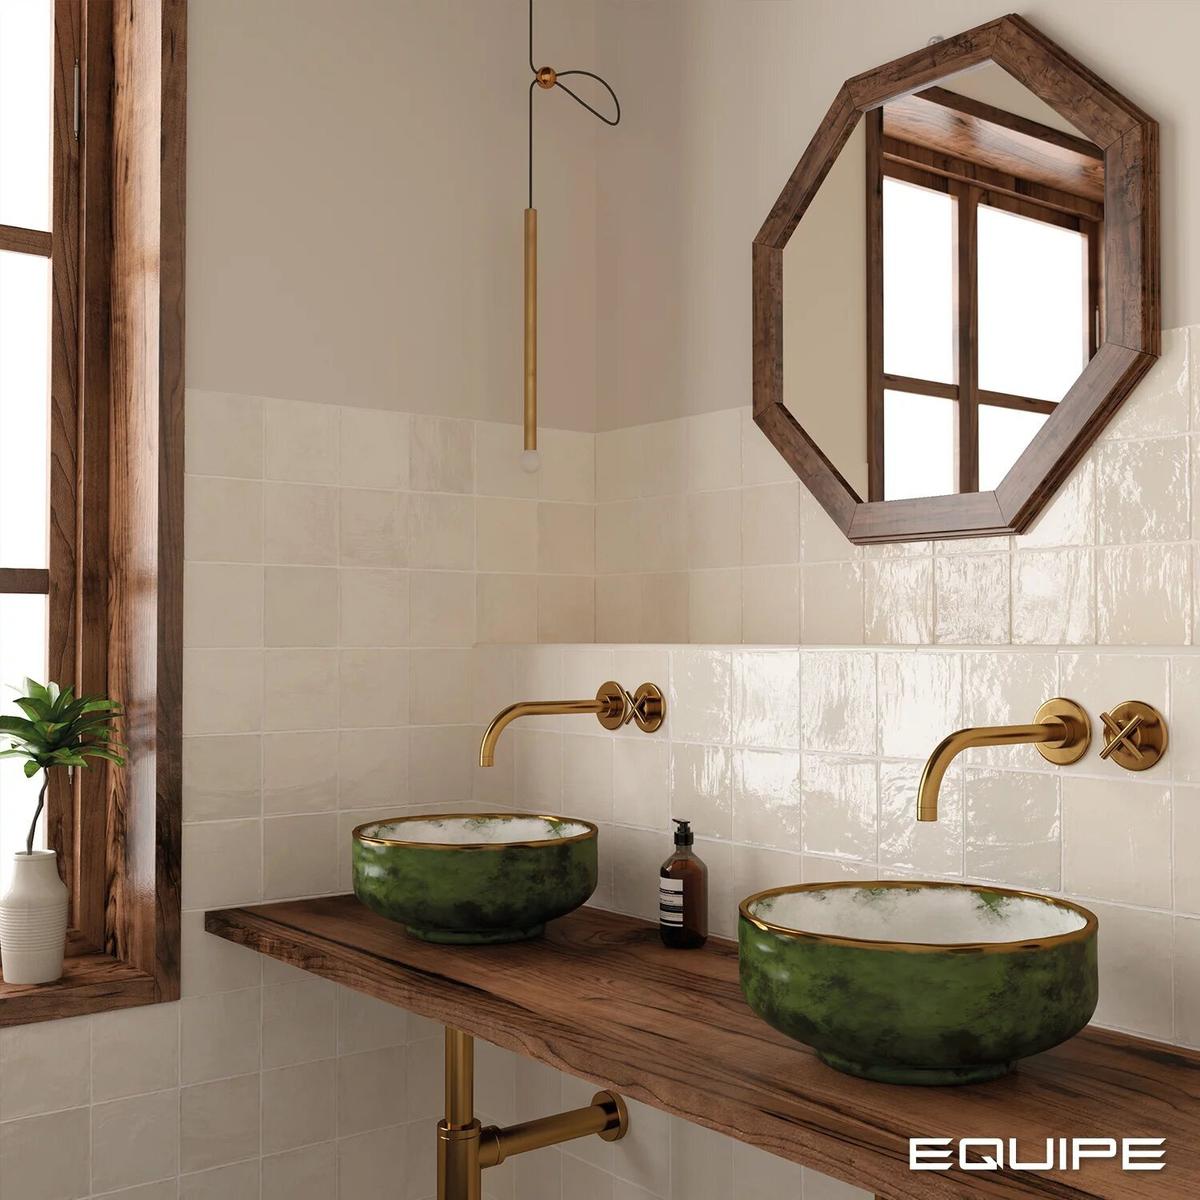 Carrelage Zellige beige brillant 15x15 cm sur mur de salle de bain murs taupe vasques vertes sur plan en bois